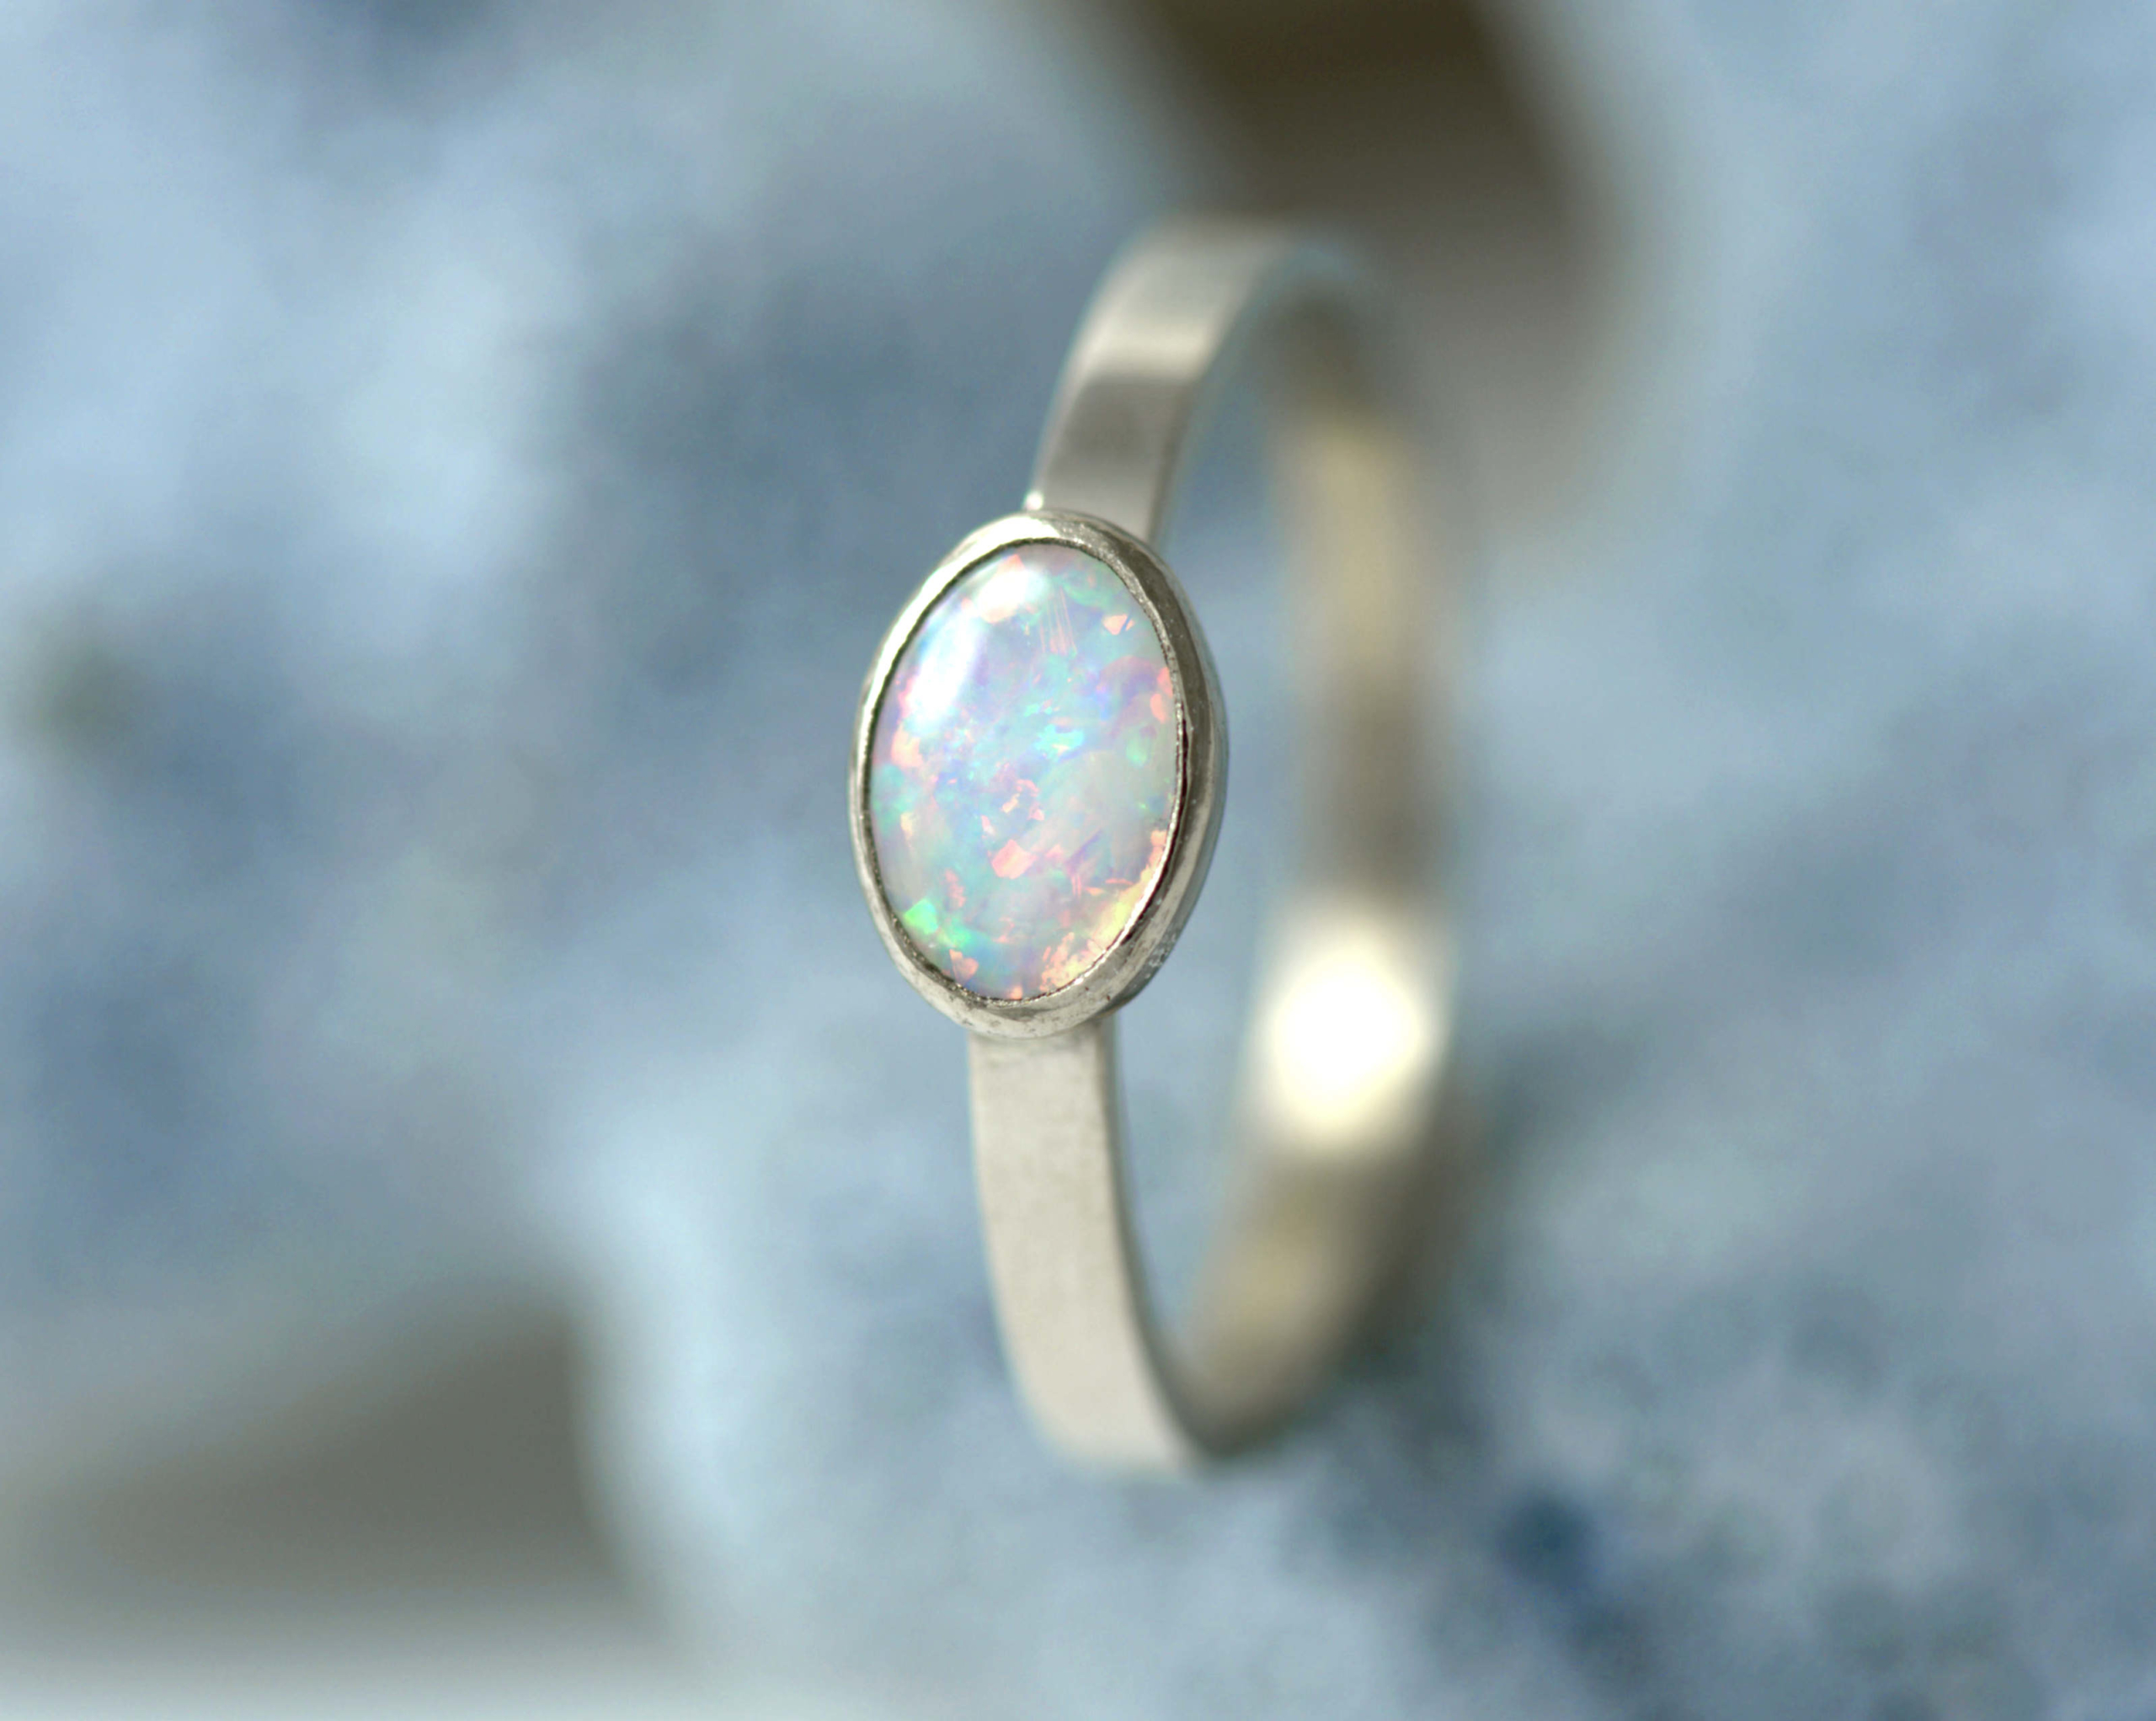 Witgouden ring met opaal: een opaaltje met prachtig lichtspel, gevat in een witgouden ring Handgemaakt en uniek.